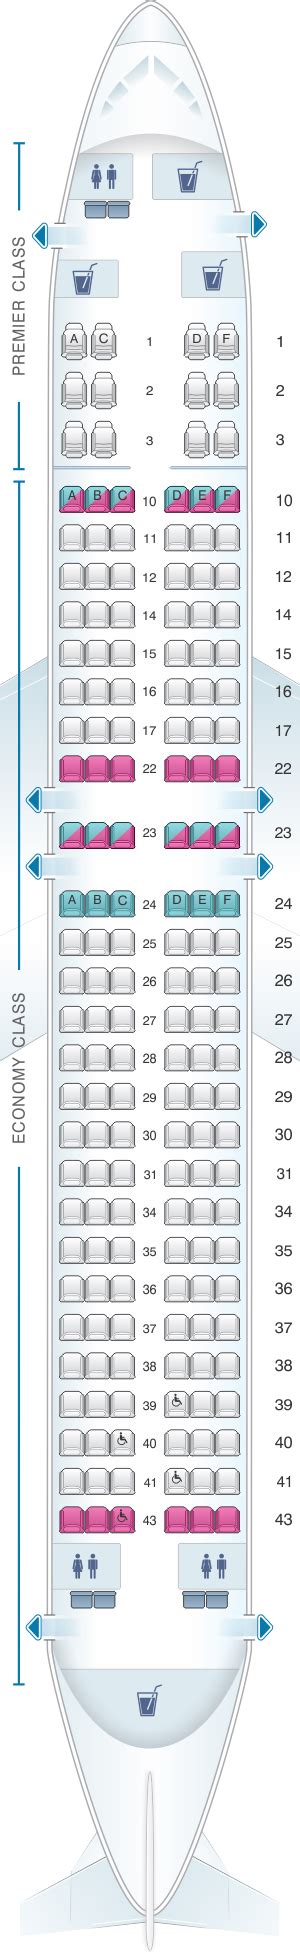 Seat Map Jet Airways Boeing B737 800 168pax